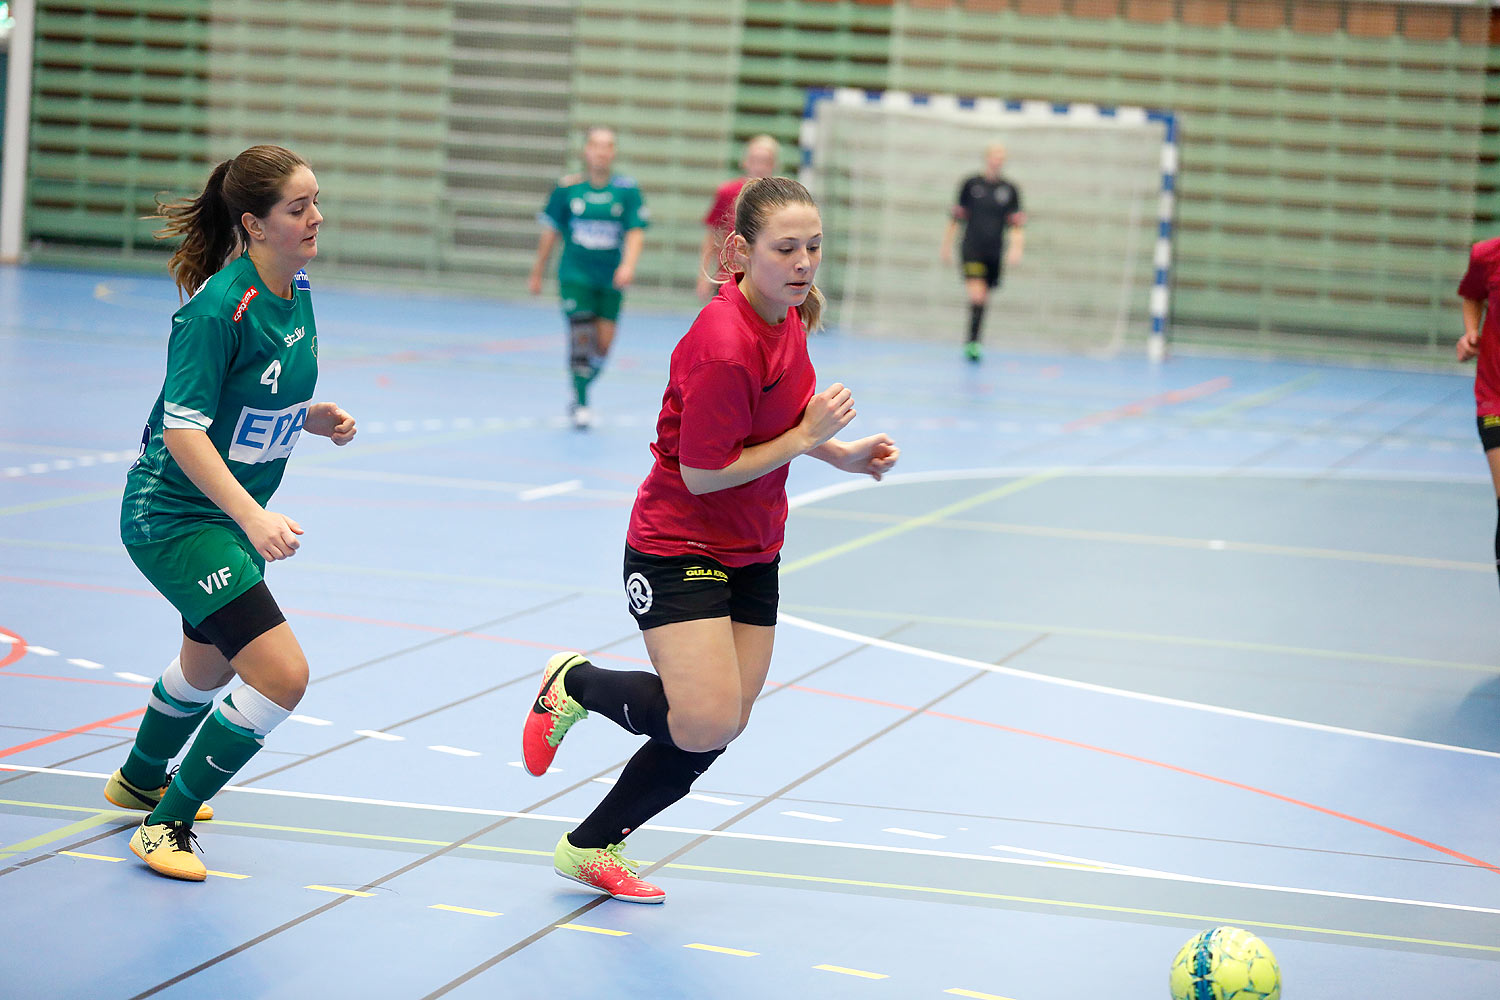 Skövde Futsalcup Damer Falköping Futsal Club-Våmbs IF,dam,Arena Skövde,Skövde,Sverige,Skövde Futsalcup 2016,Futsal,2016,141859